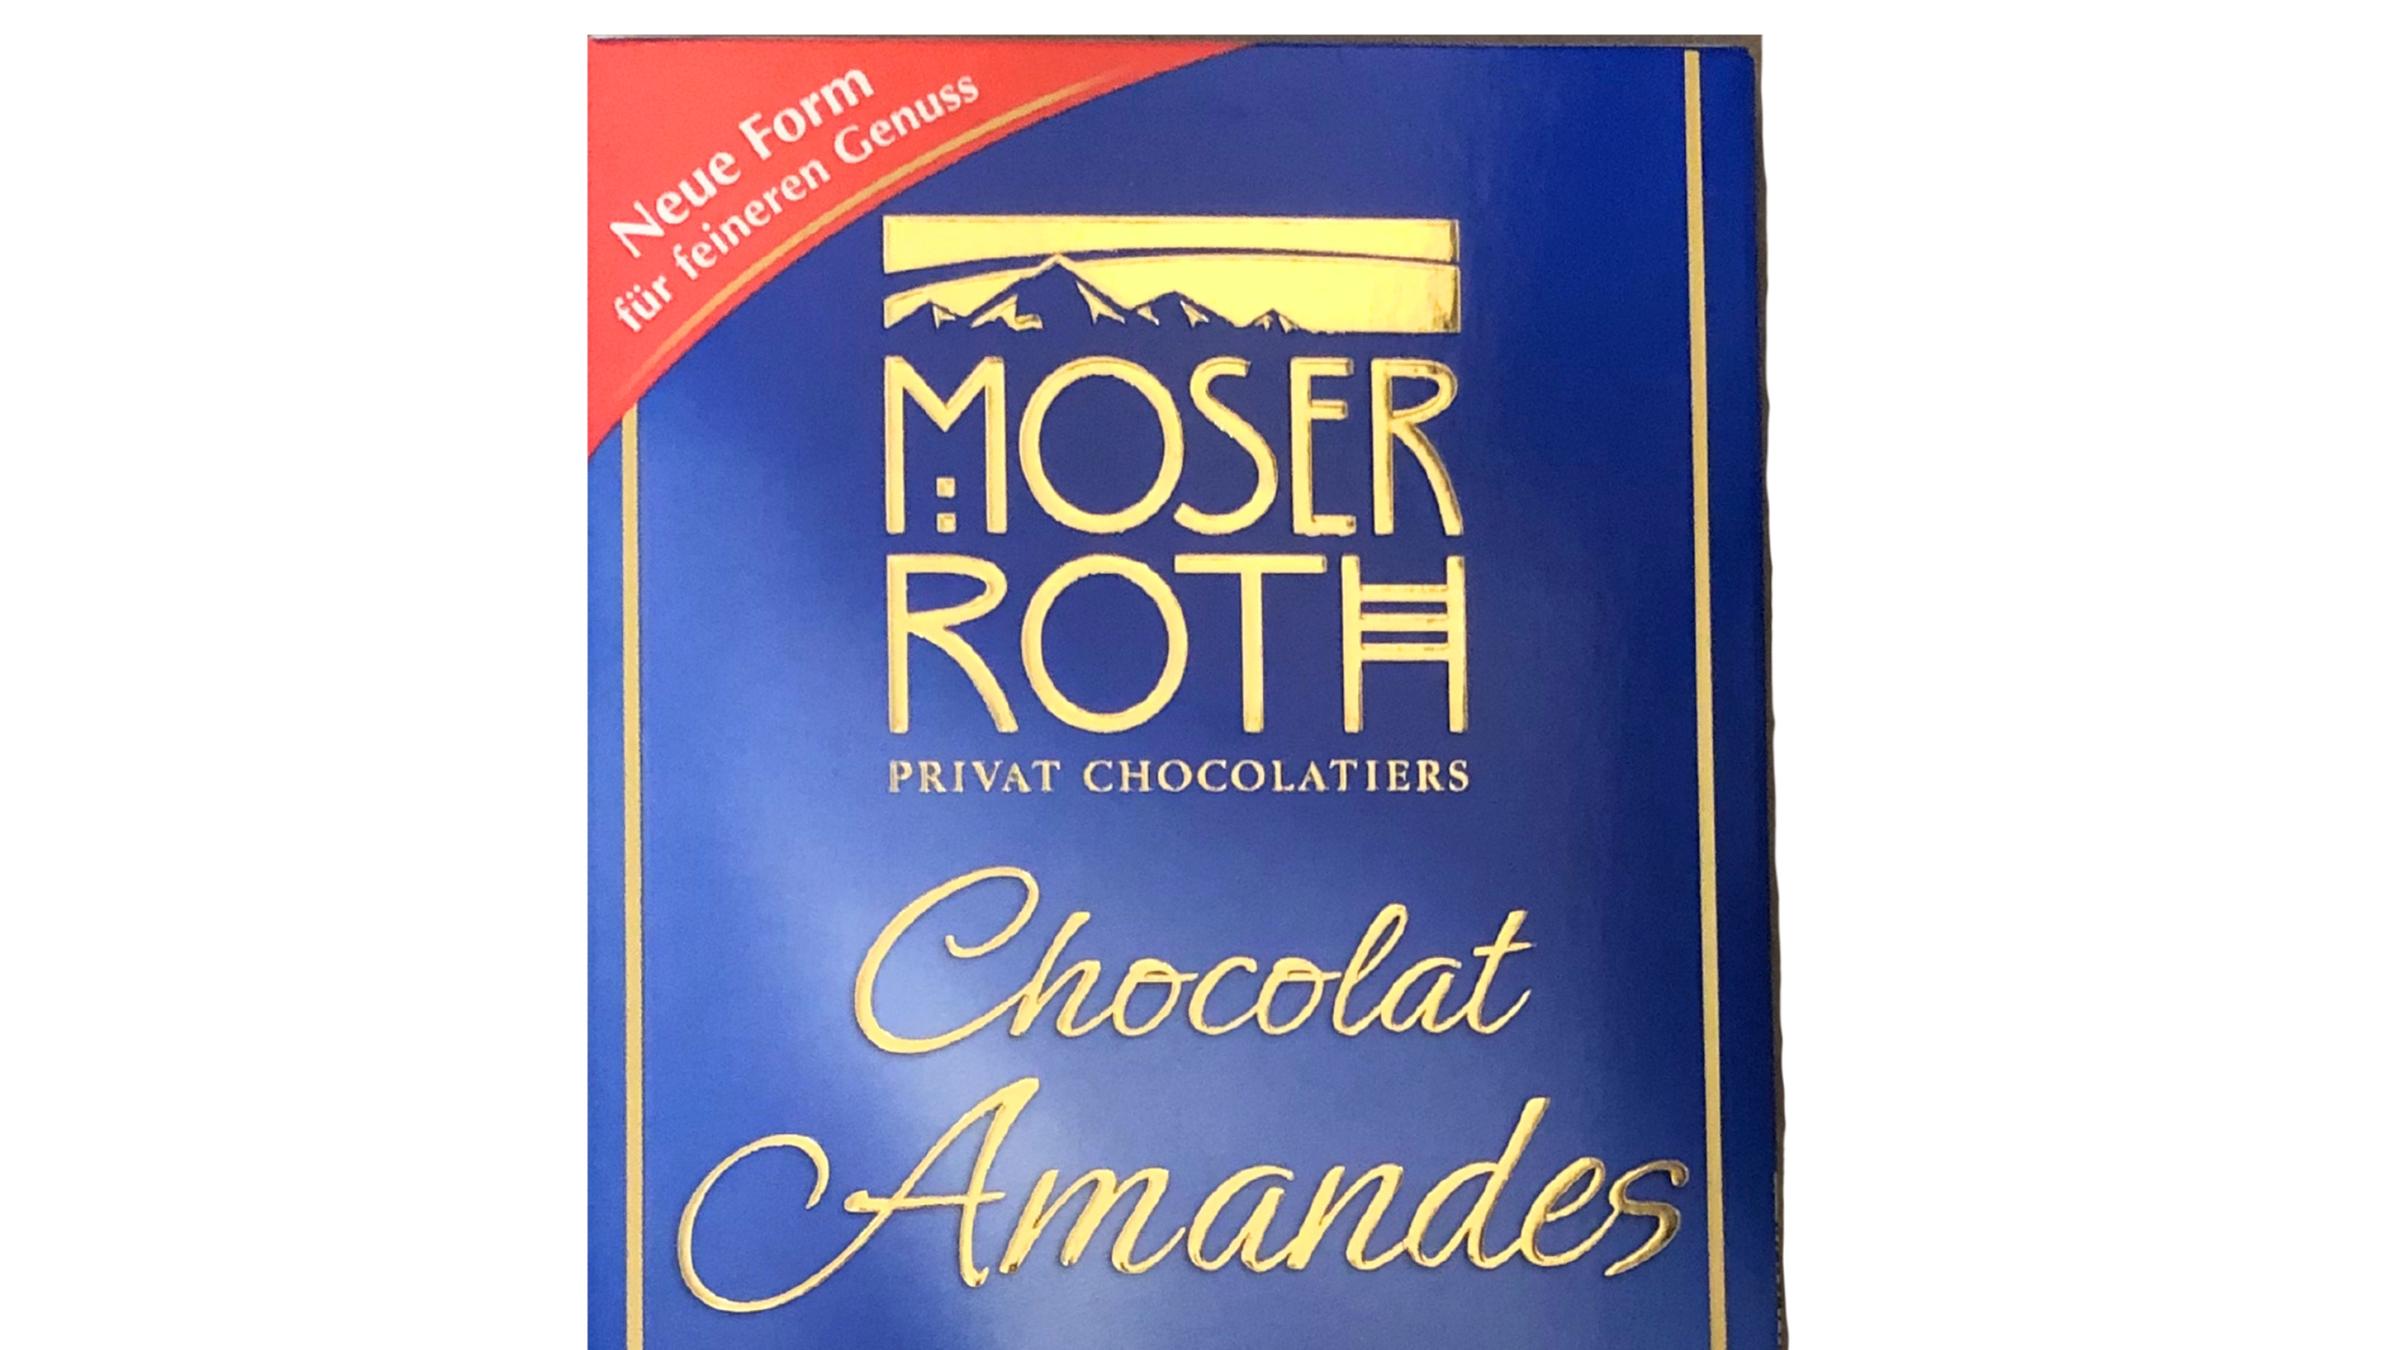 Schokolade der Aldi-Eigenmarke Moser Roth